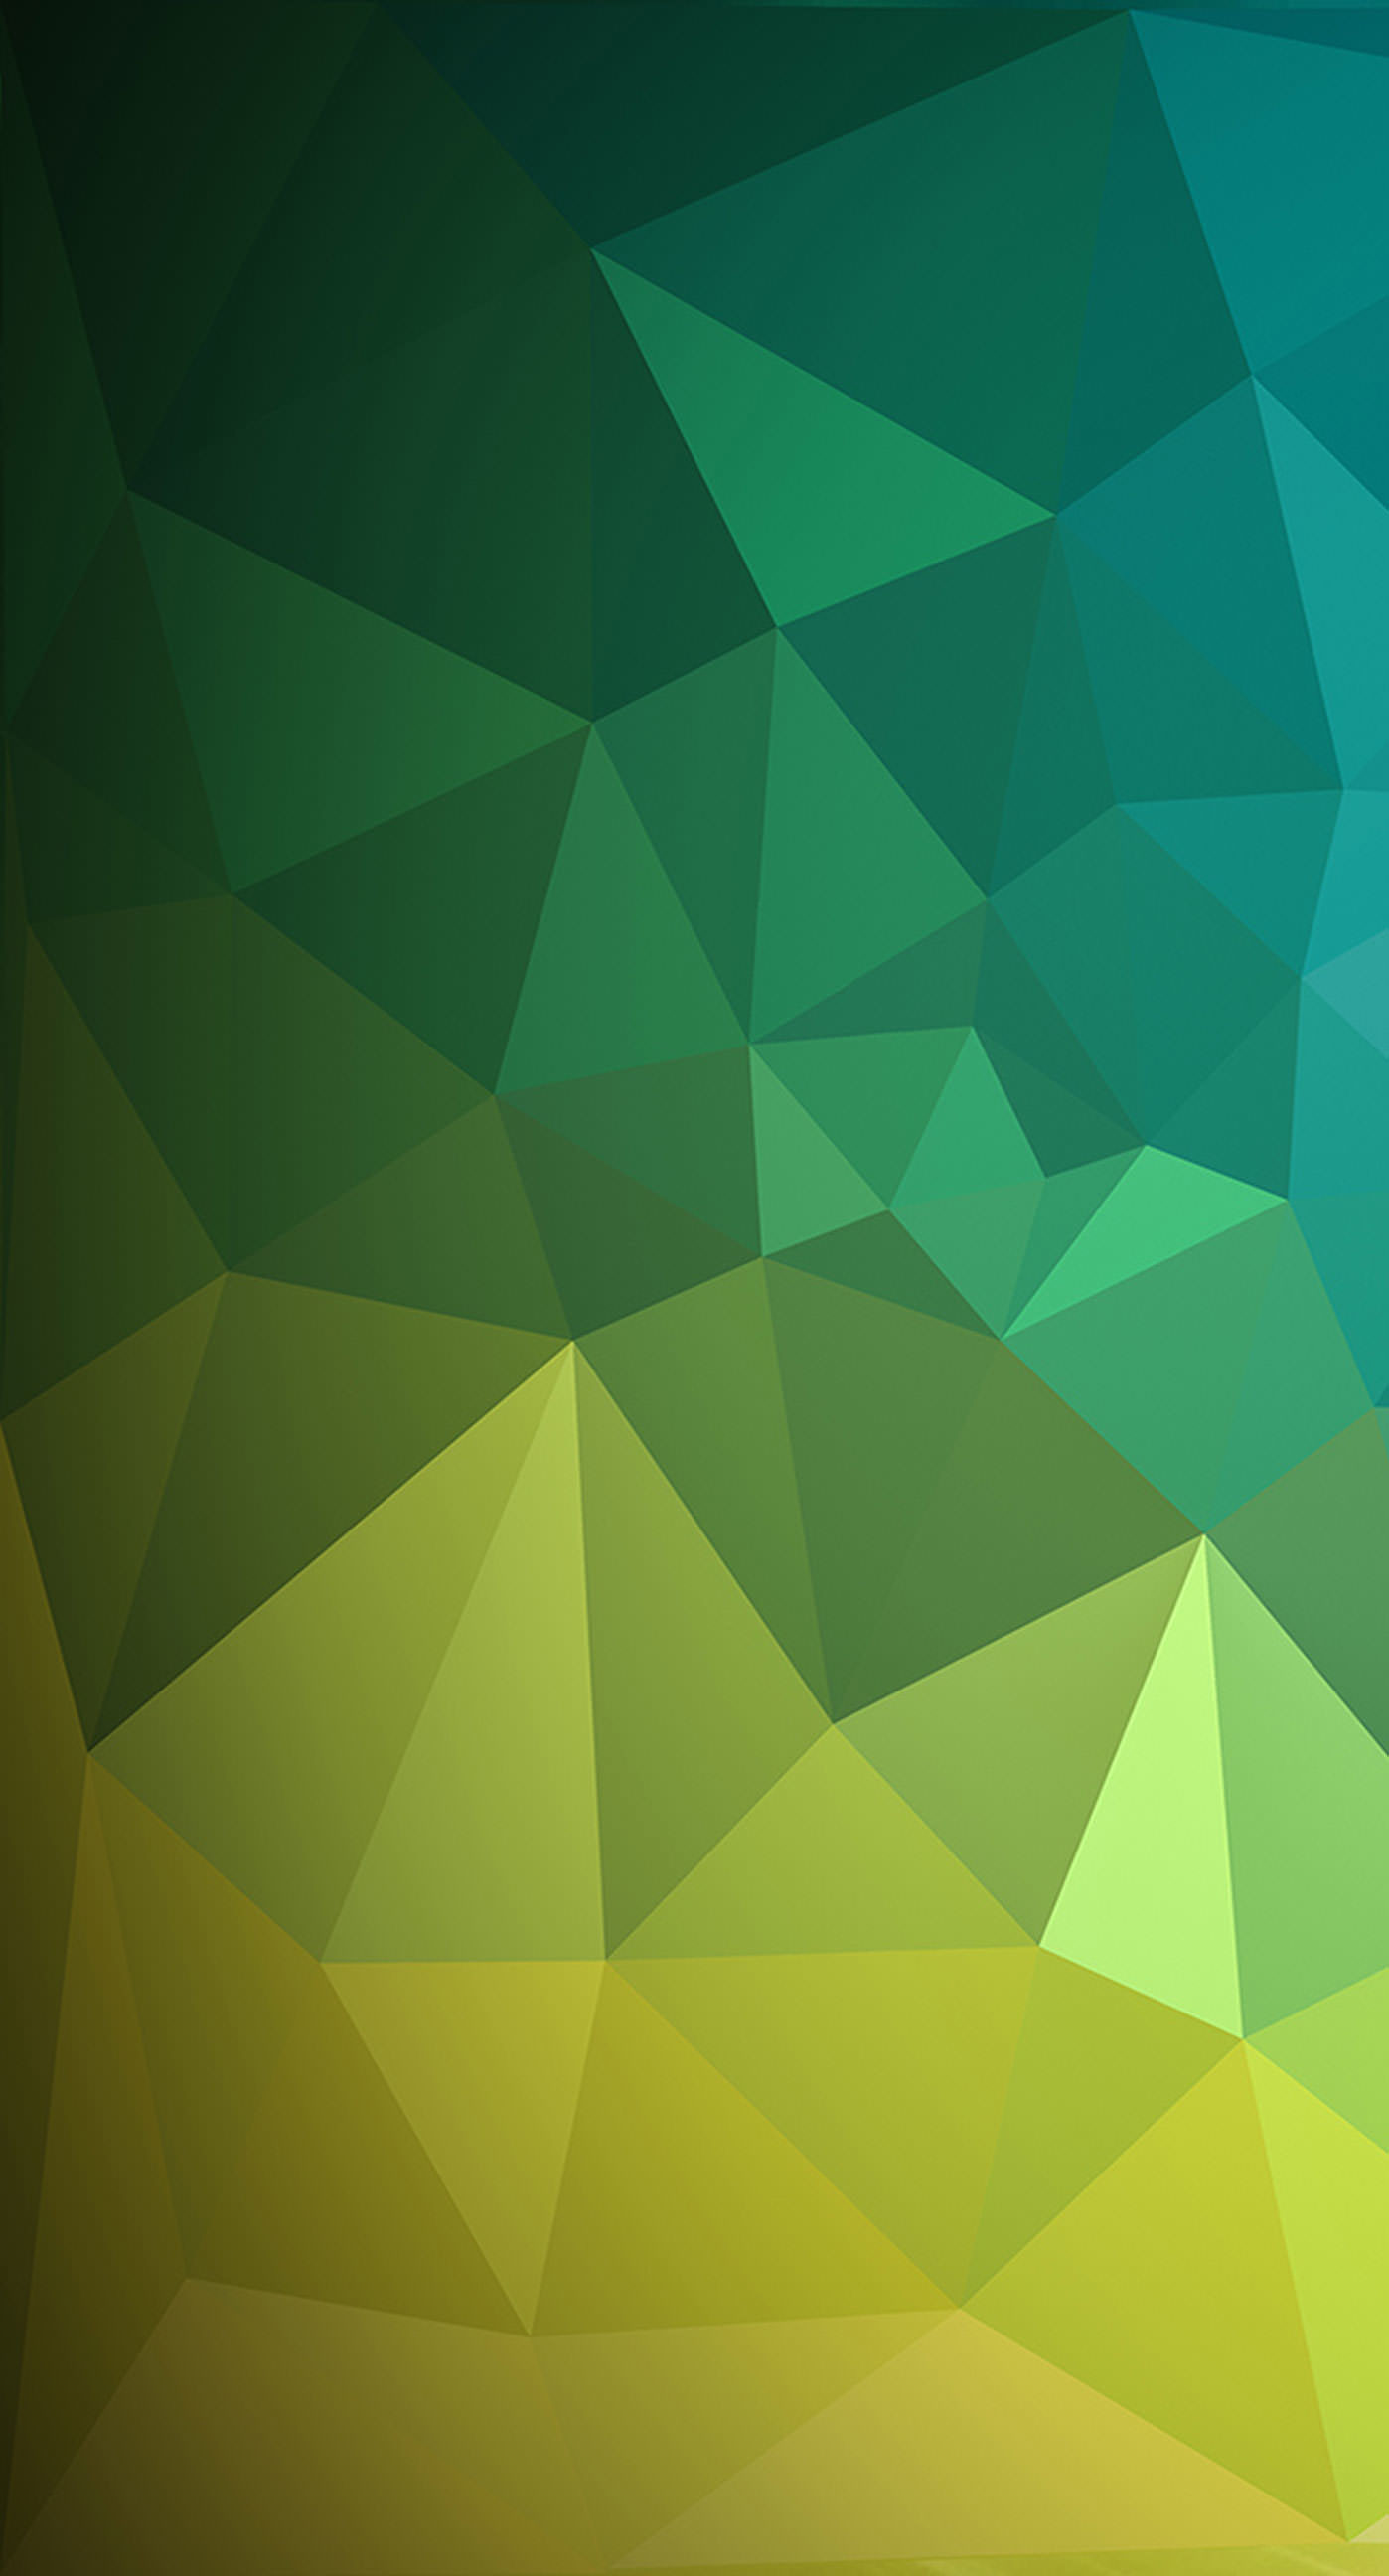 Green Wallpapers Free HD Download 500 HQ  Unsplash